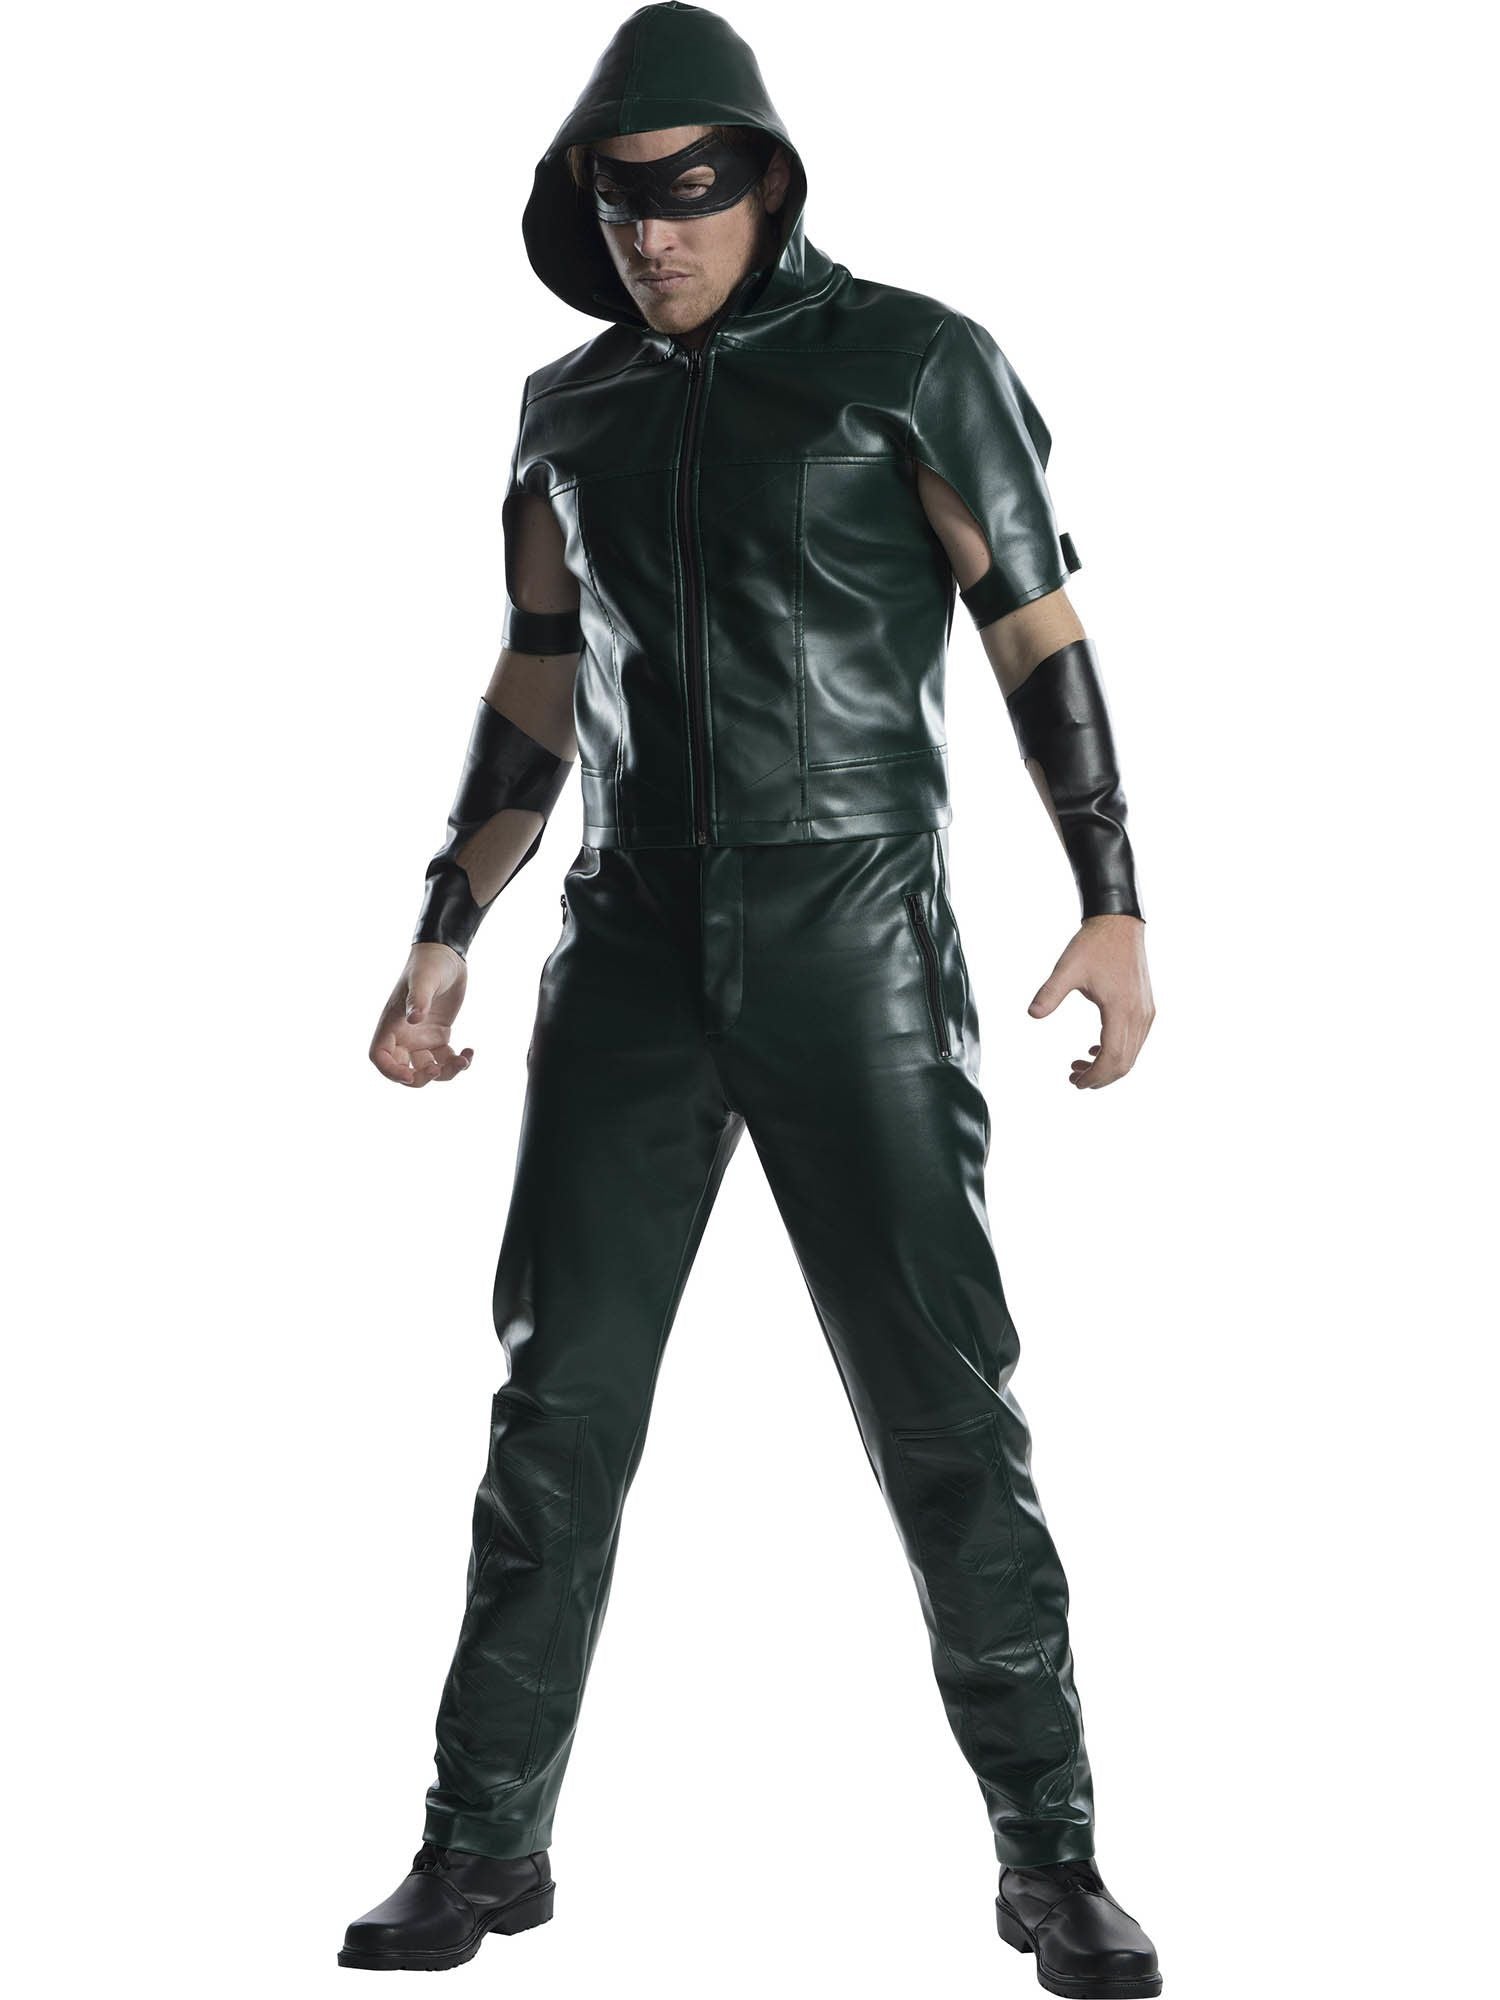 Adult Justice League Arrow Costume - costumes.com